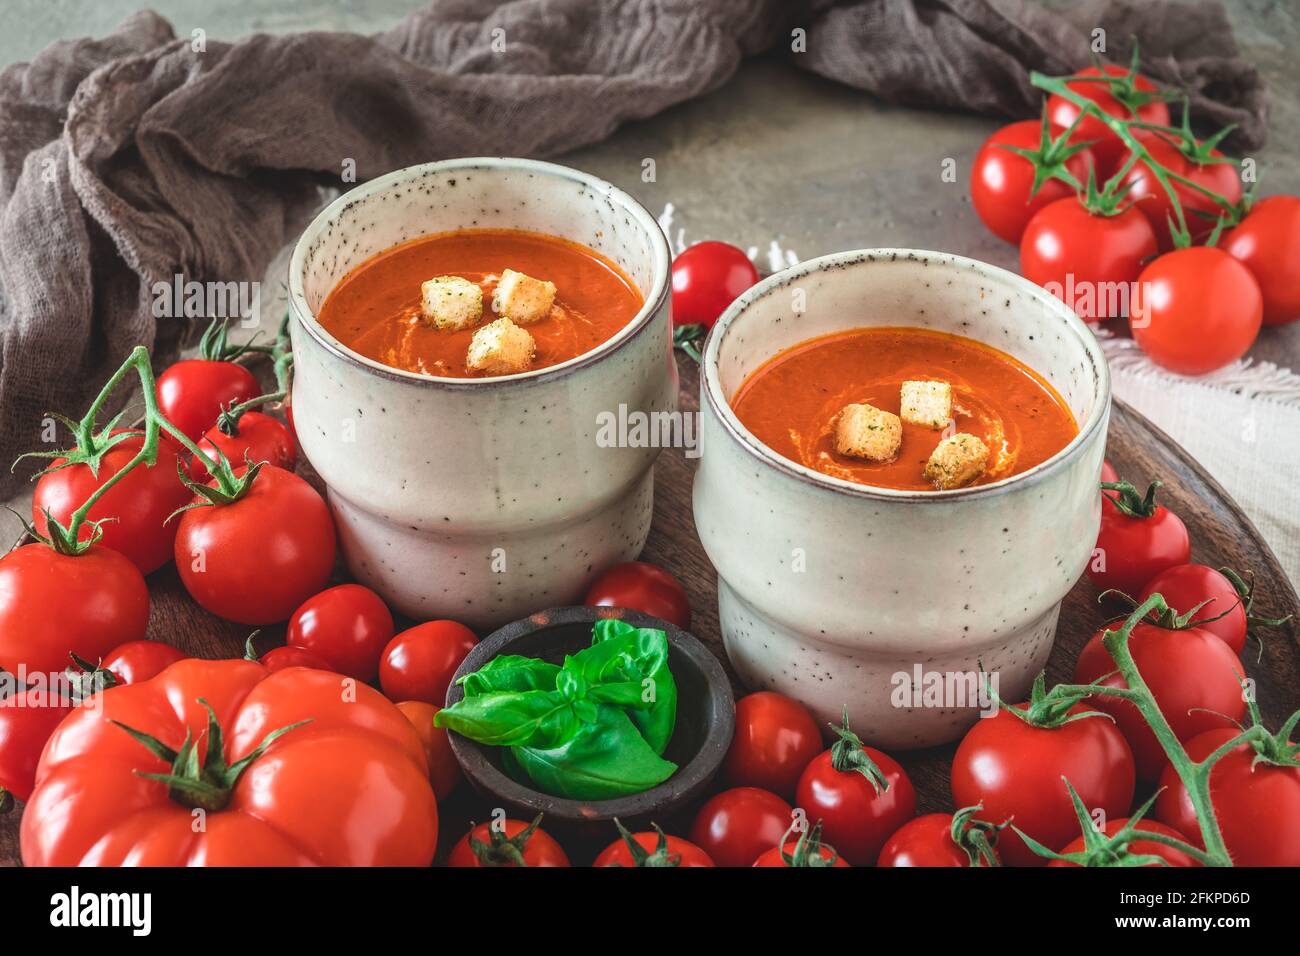 Due tazze riempite con zuppa di pomodoro fresca fatta in casa su un vassoio di legno con una varietà di pomodori maturi Foto Stock